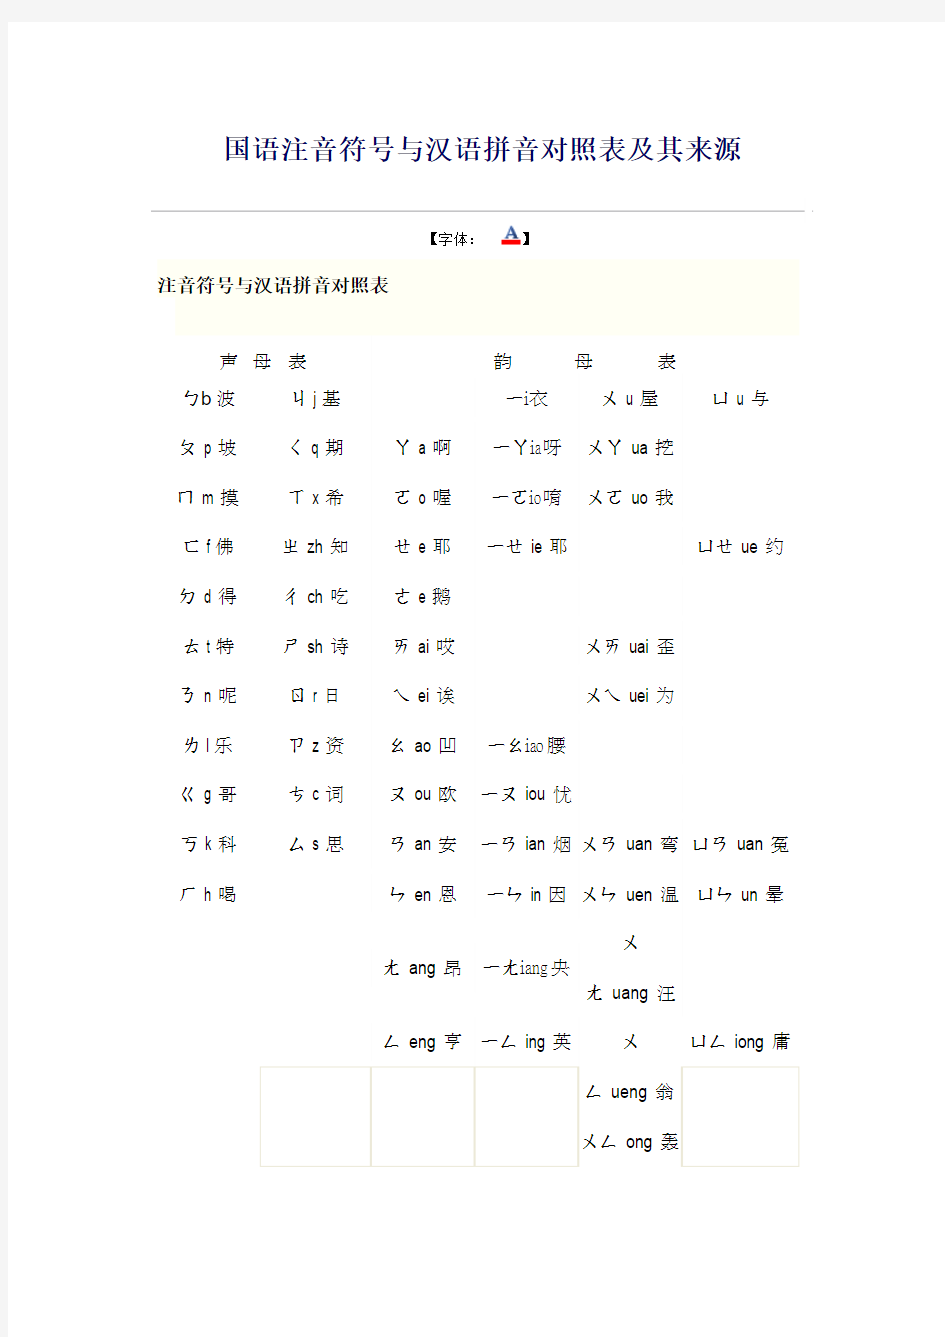 国语注音符号与汉语拼音对照表及其来源